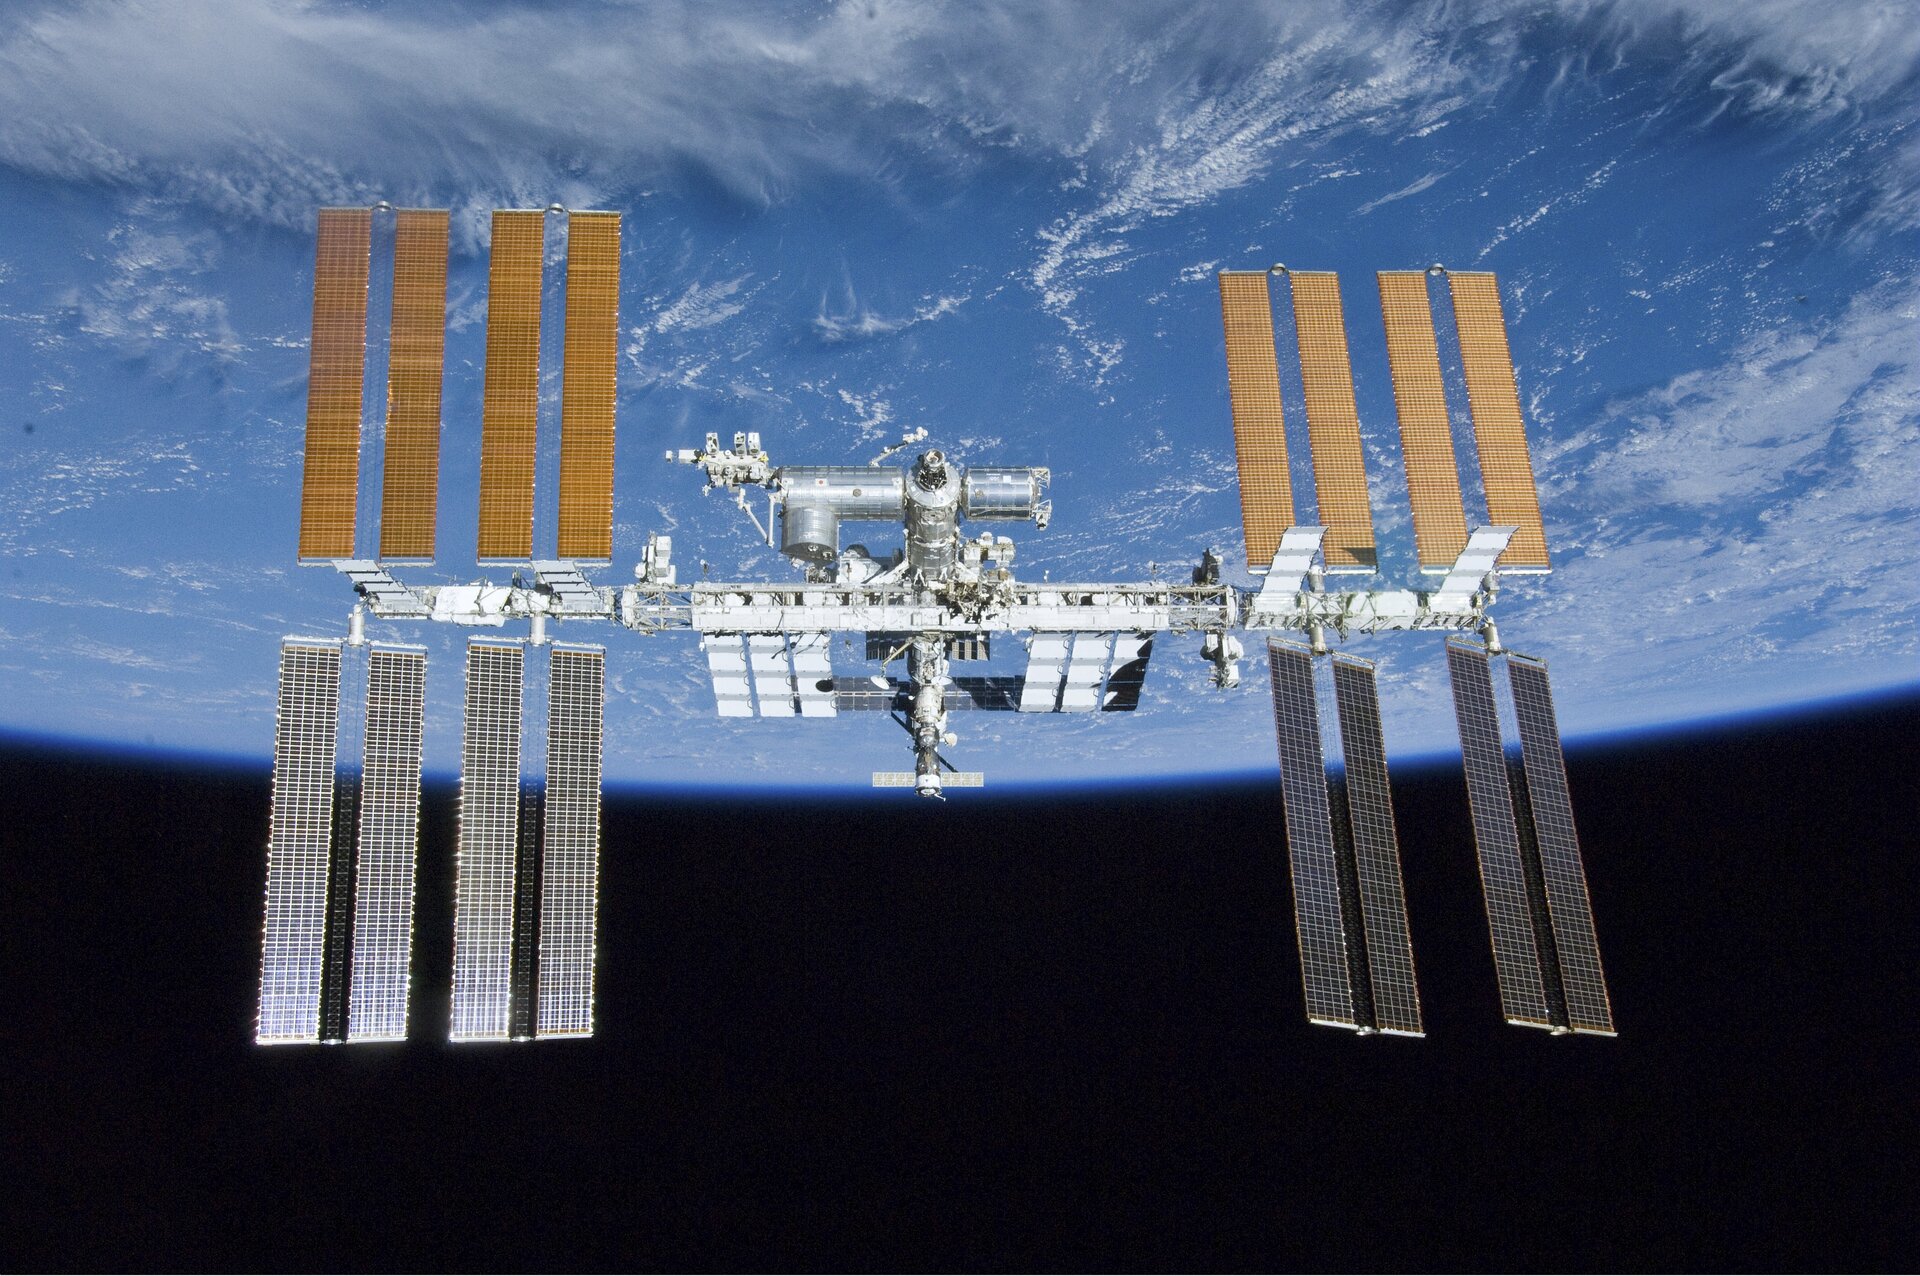 Mezinárodní kosmická stanice